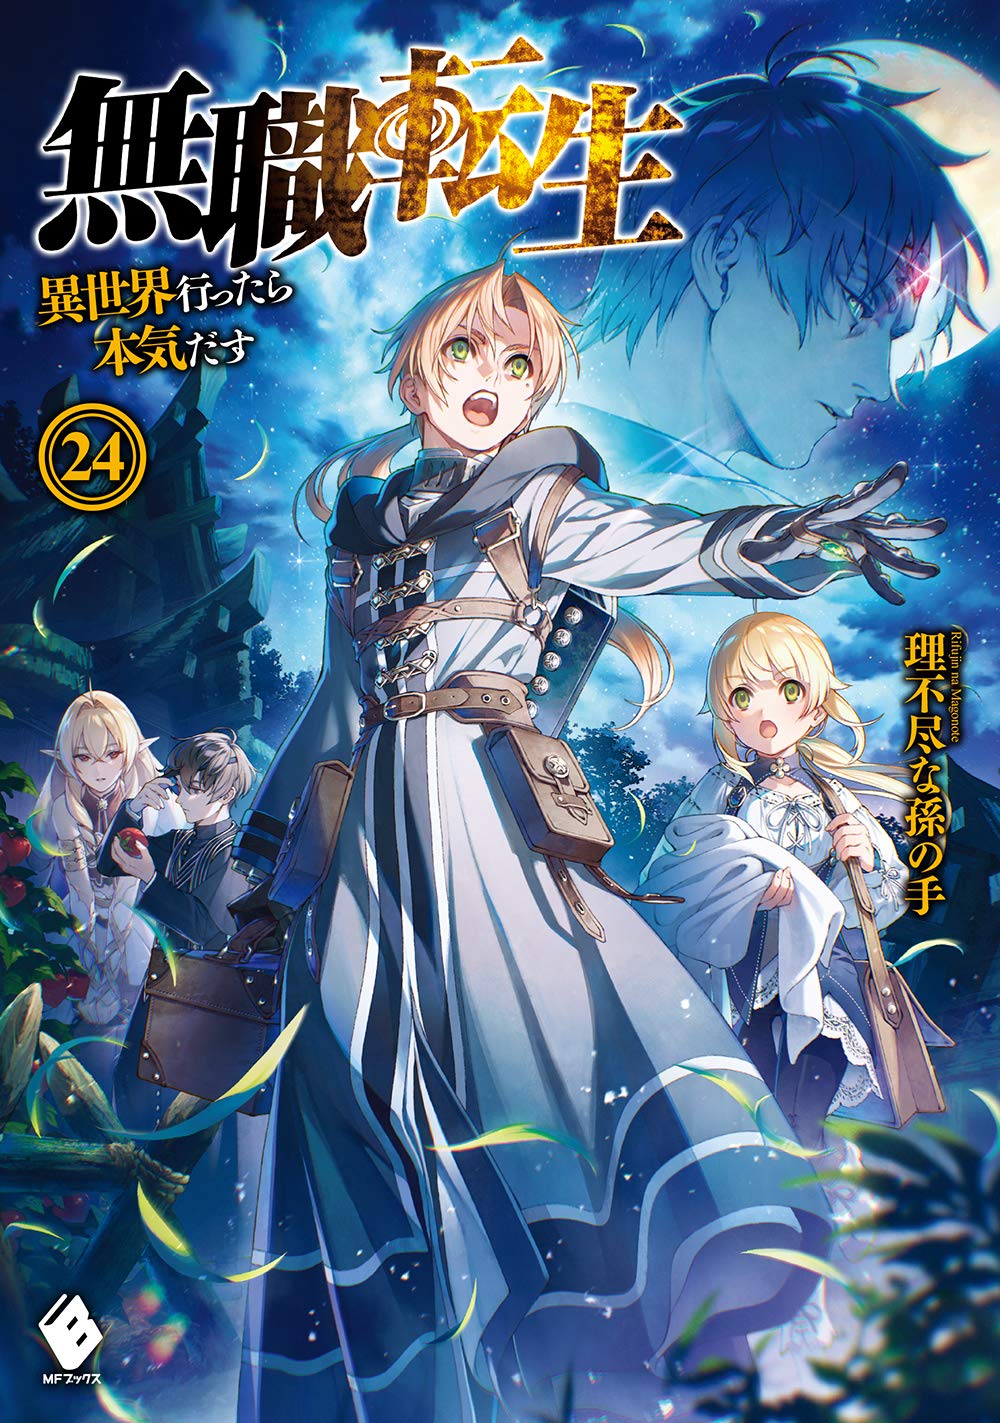 MM on X: Sword Art Online novel vol 25. Mushoku Tensei